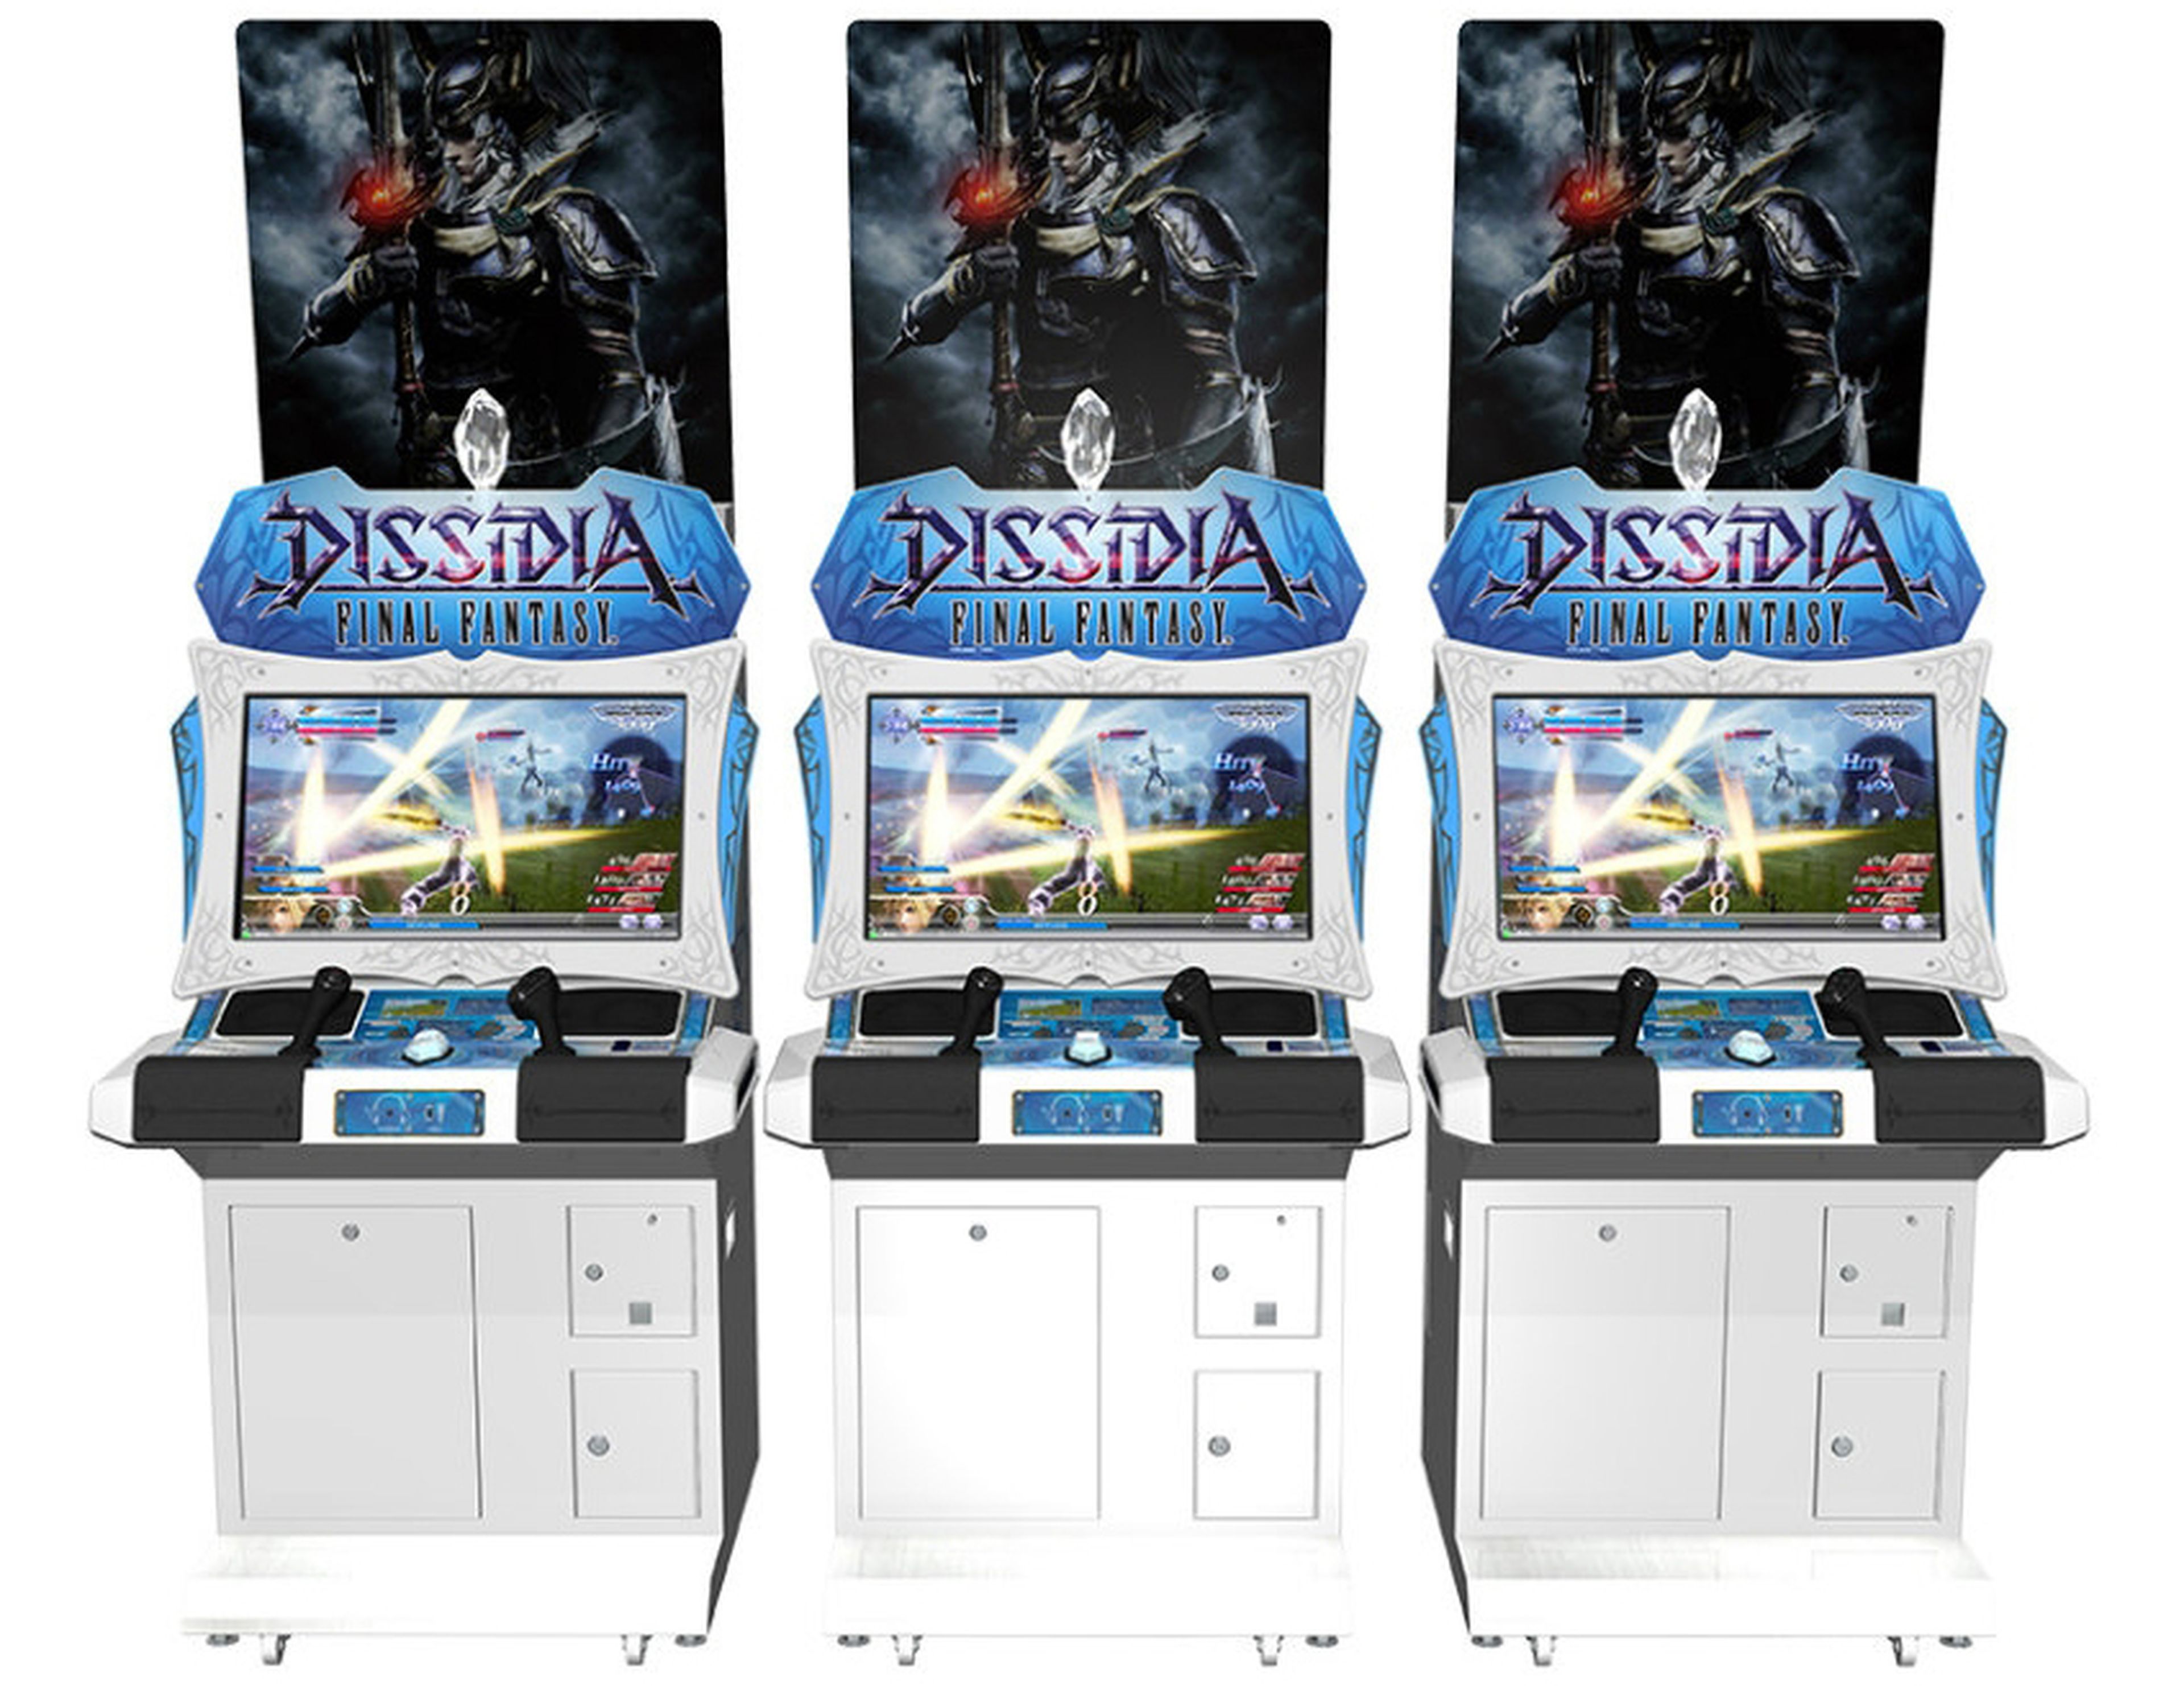 Dissidia Final Fantasy para arcade y PS4